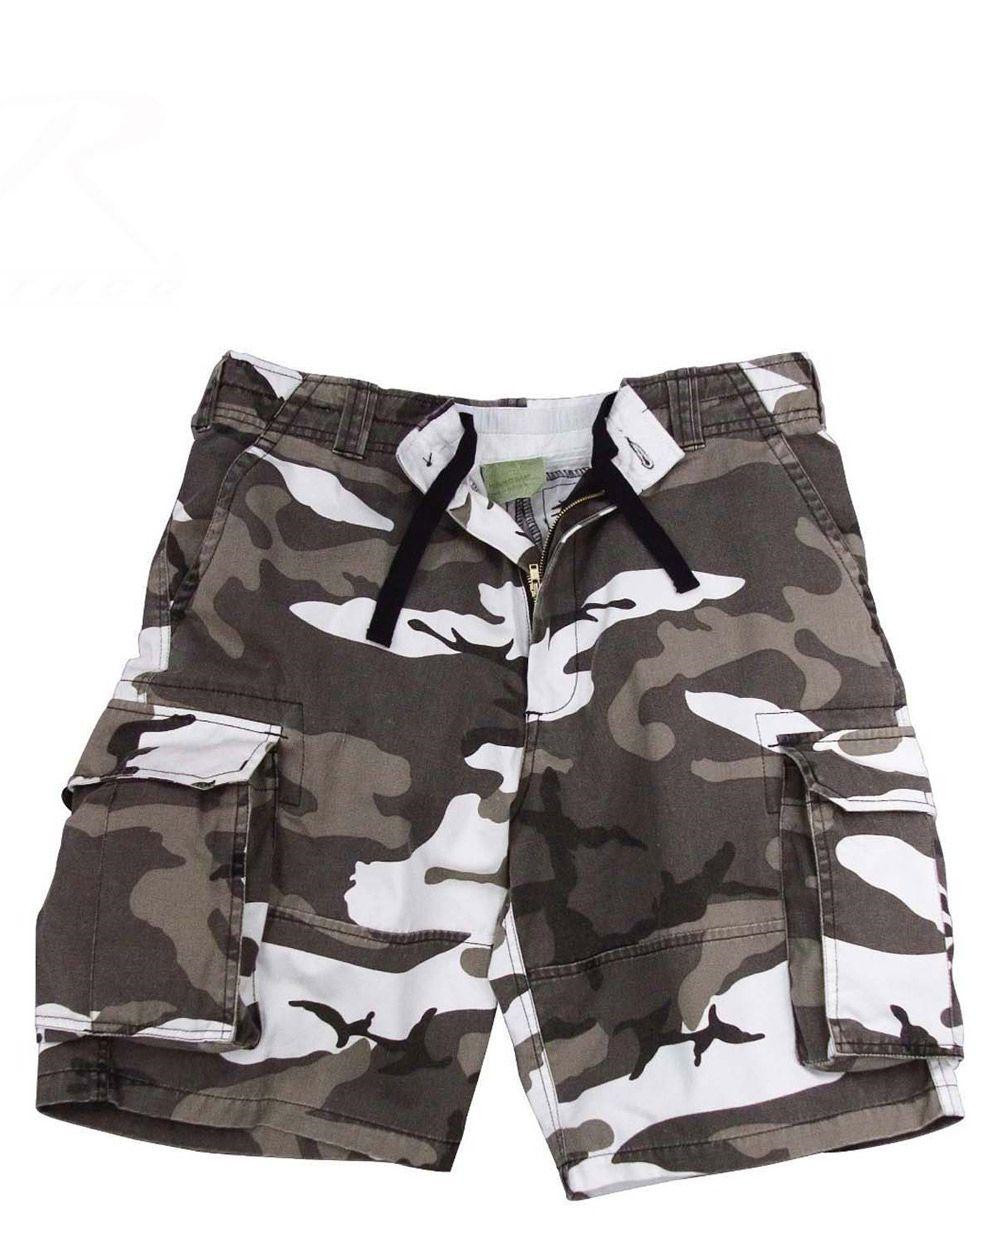 Rothco Cargo shorts (Urban Camo, 2XL)